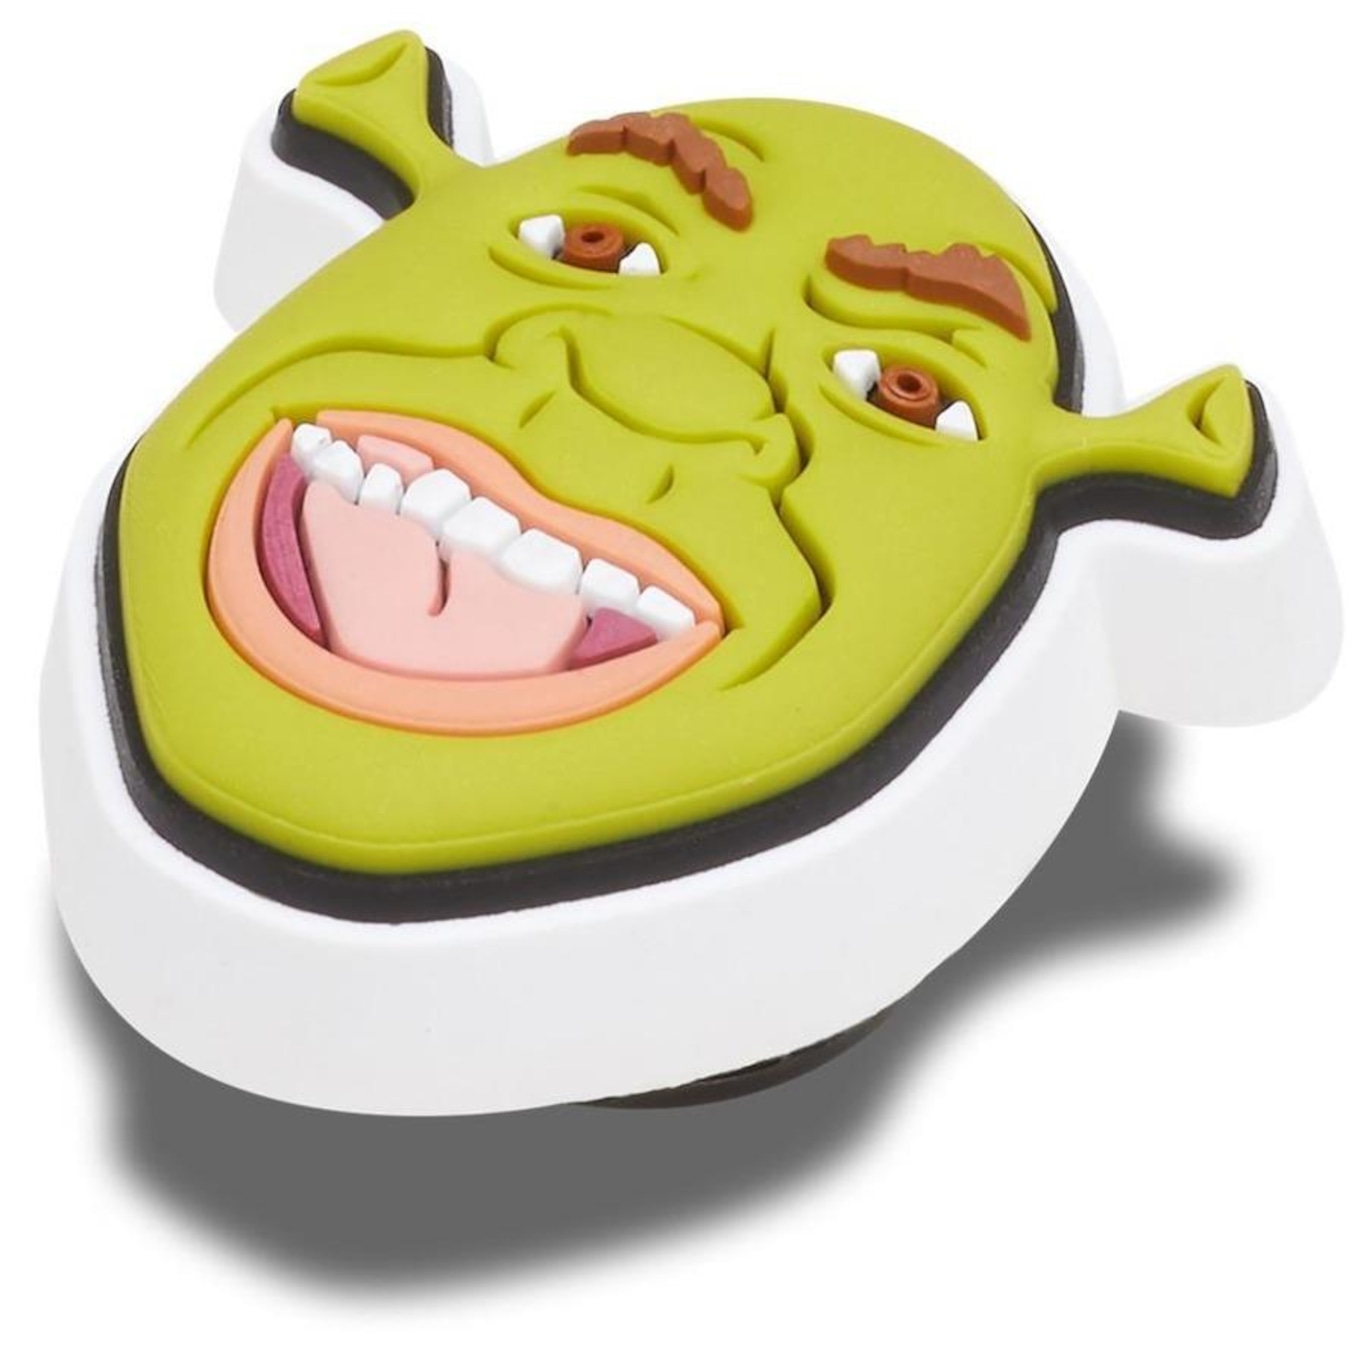 Jibbitz™ Shrek Princesa Fiona UNICO